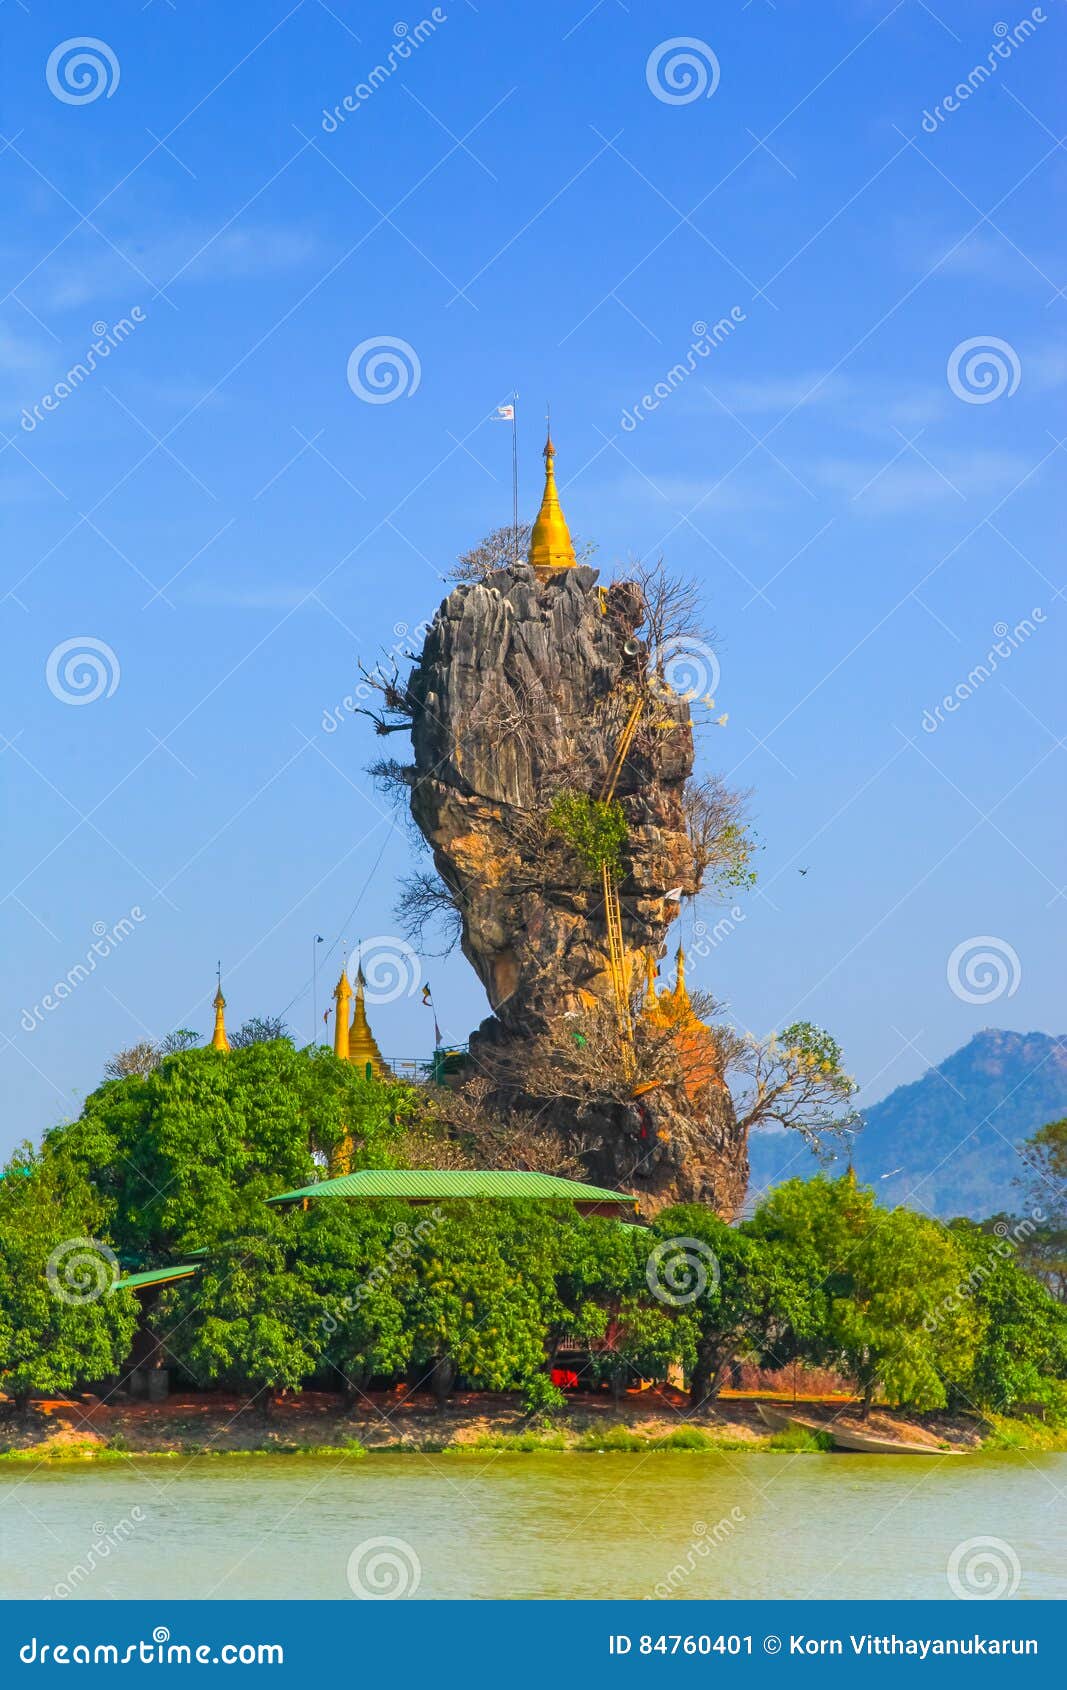 Kyauk Kalap Pagoda